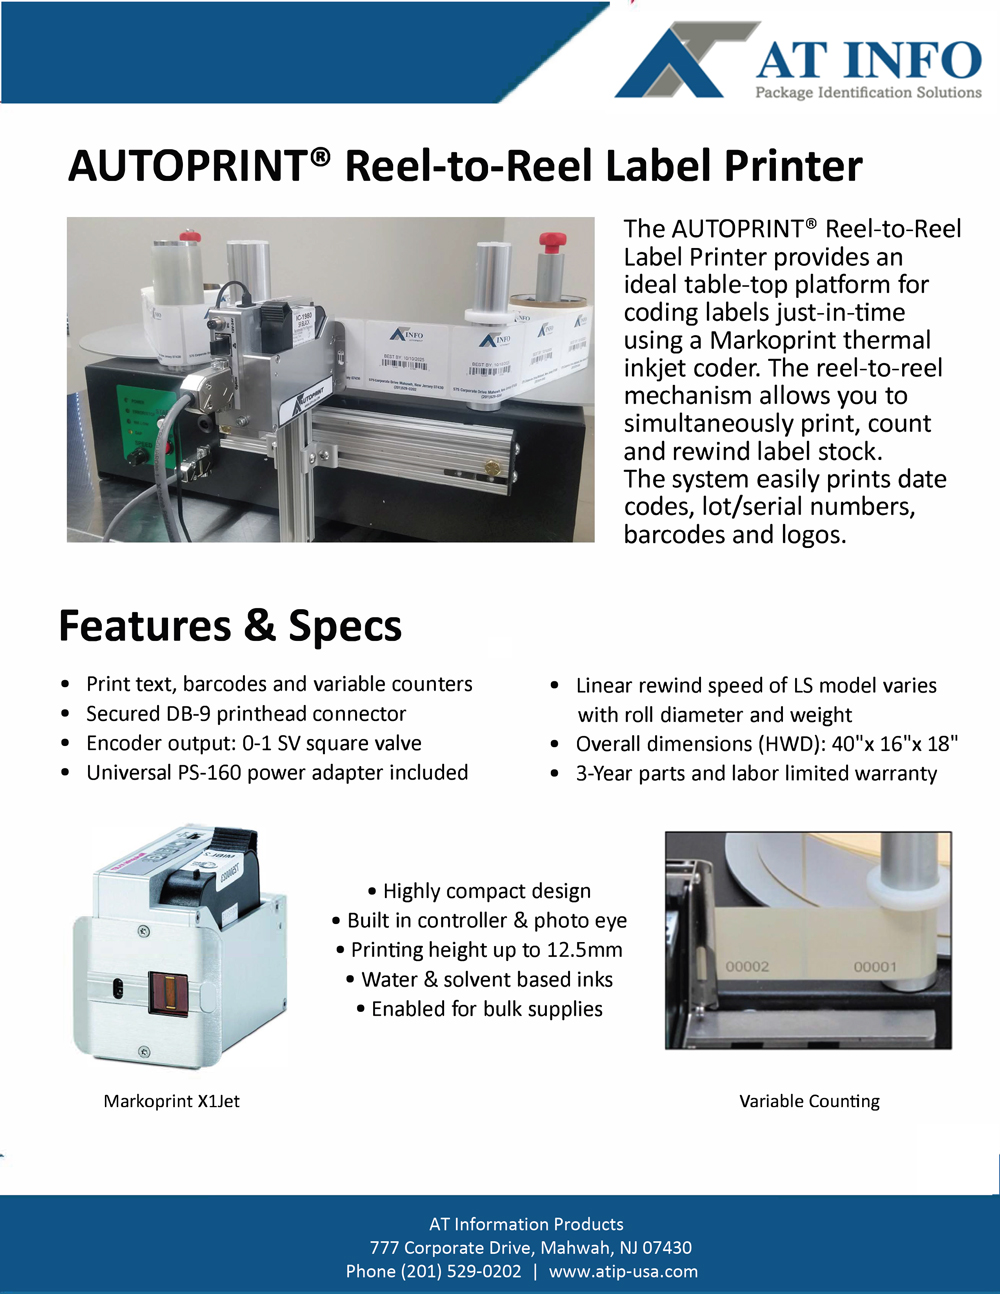 Reel-to-Reel Label Printer brochure